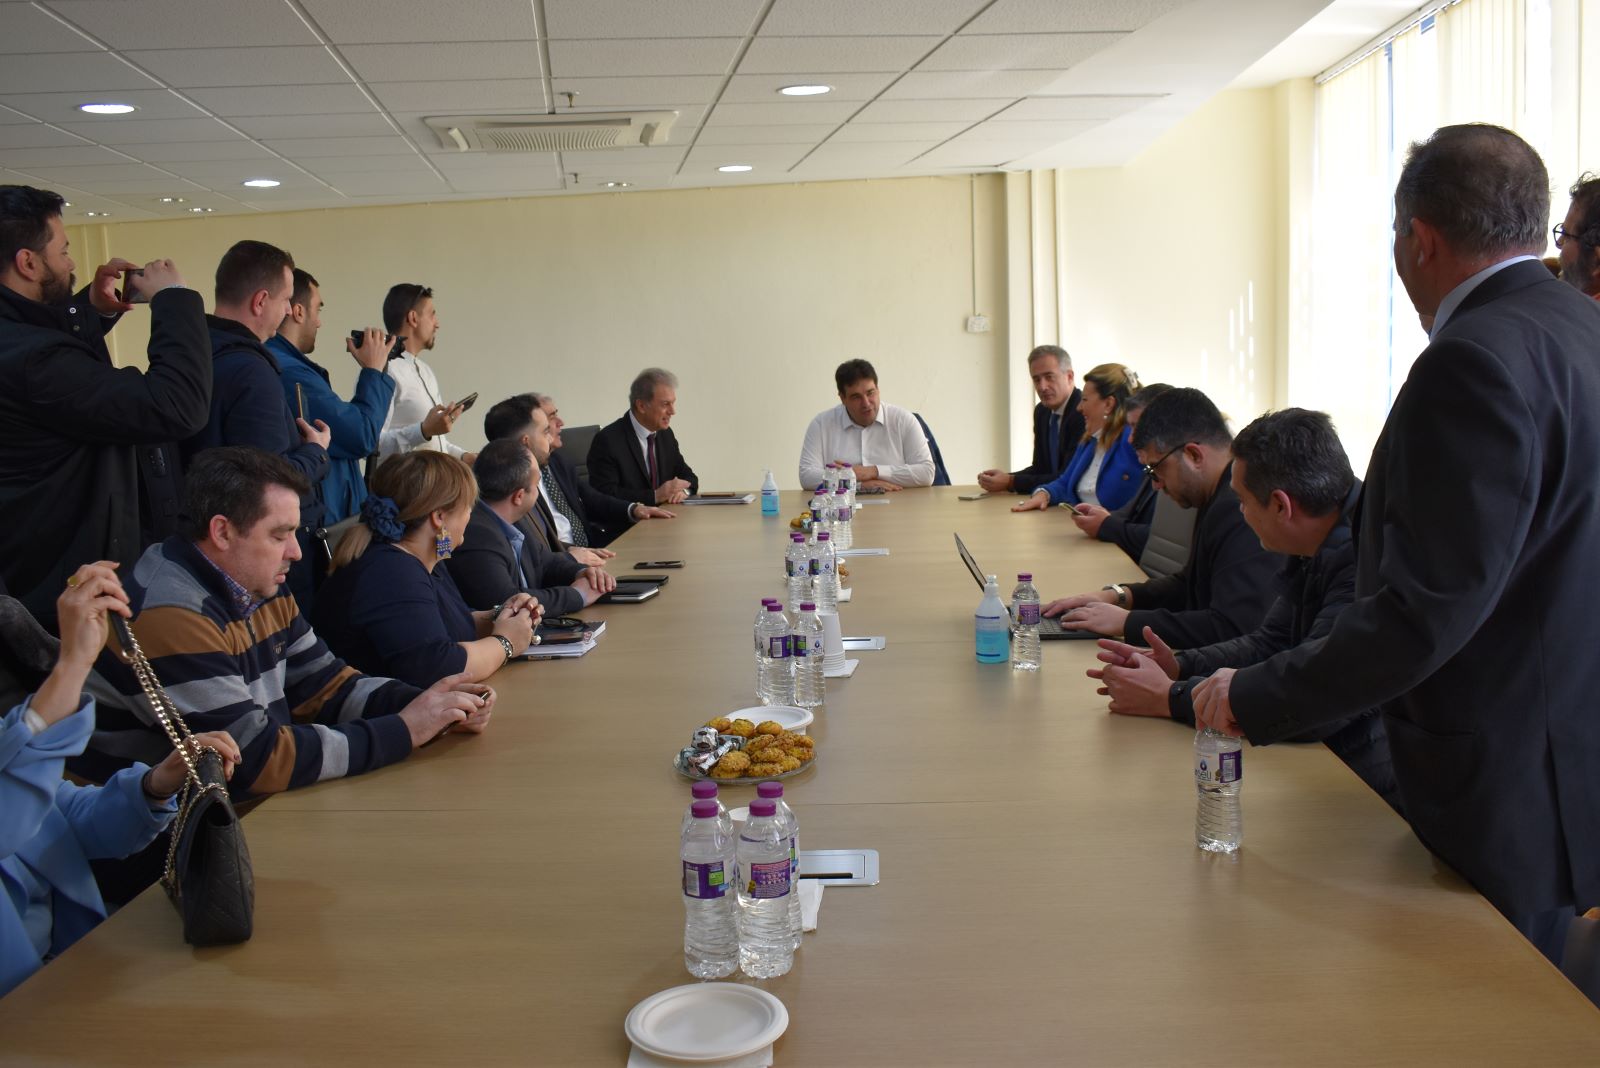 Επίσκεψη Αναπληρωτή Υπουργού Εσωτερικών Θοδωρή Λιβάνιου στην Περιφέρεια Δυτικής Μακεδονίας